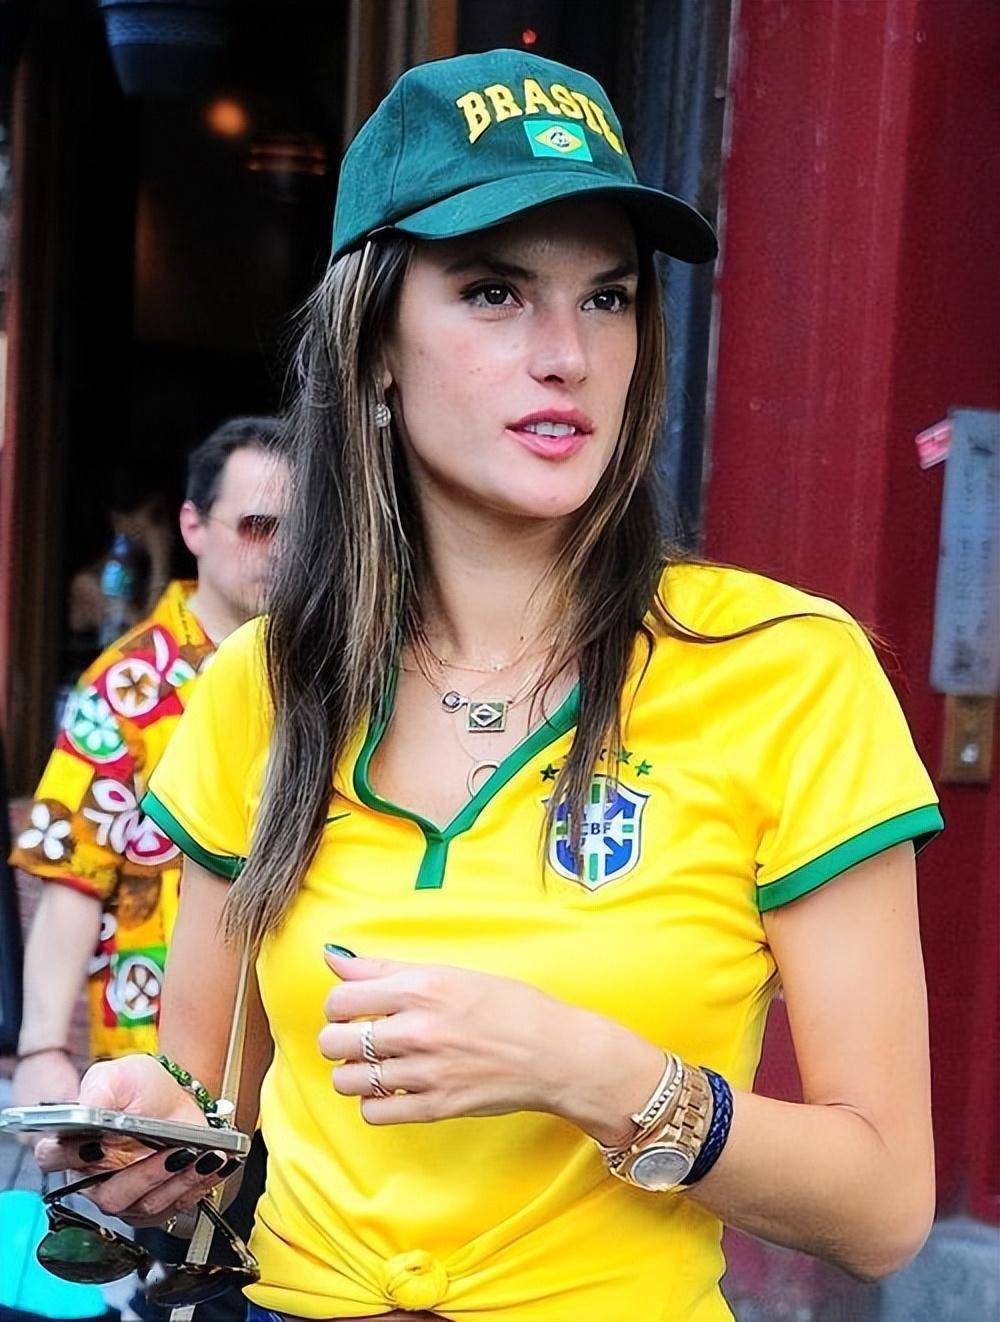 41岁巴西超模aa,亮相世界杯!她是维密头牌,拥有天使面孔和身材